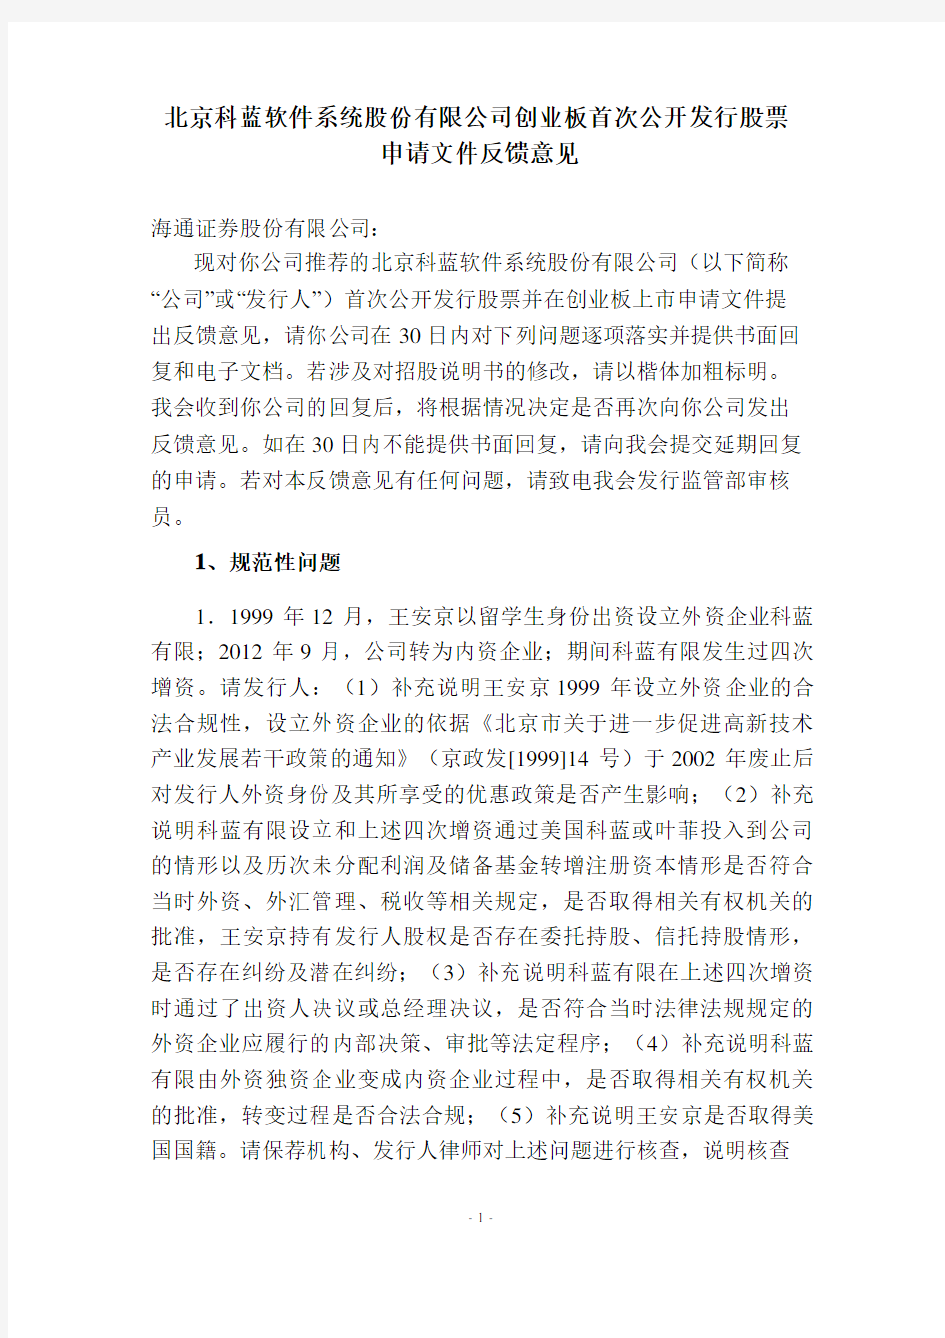 北京科蓝软件系统股份有限公司创业板首次公开发行股票申请